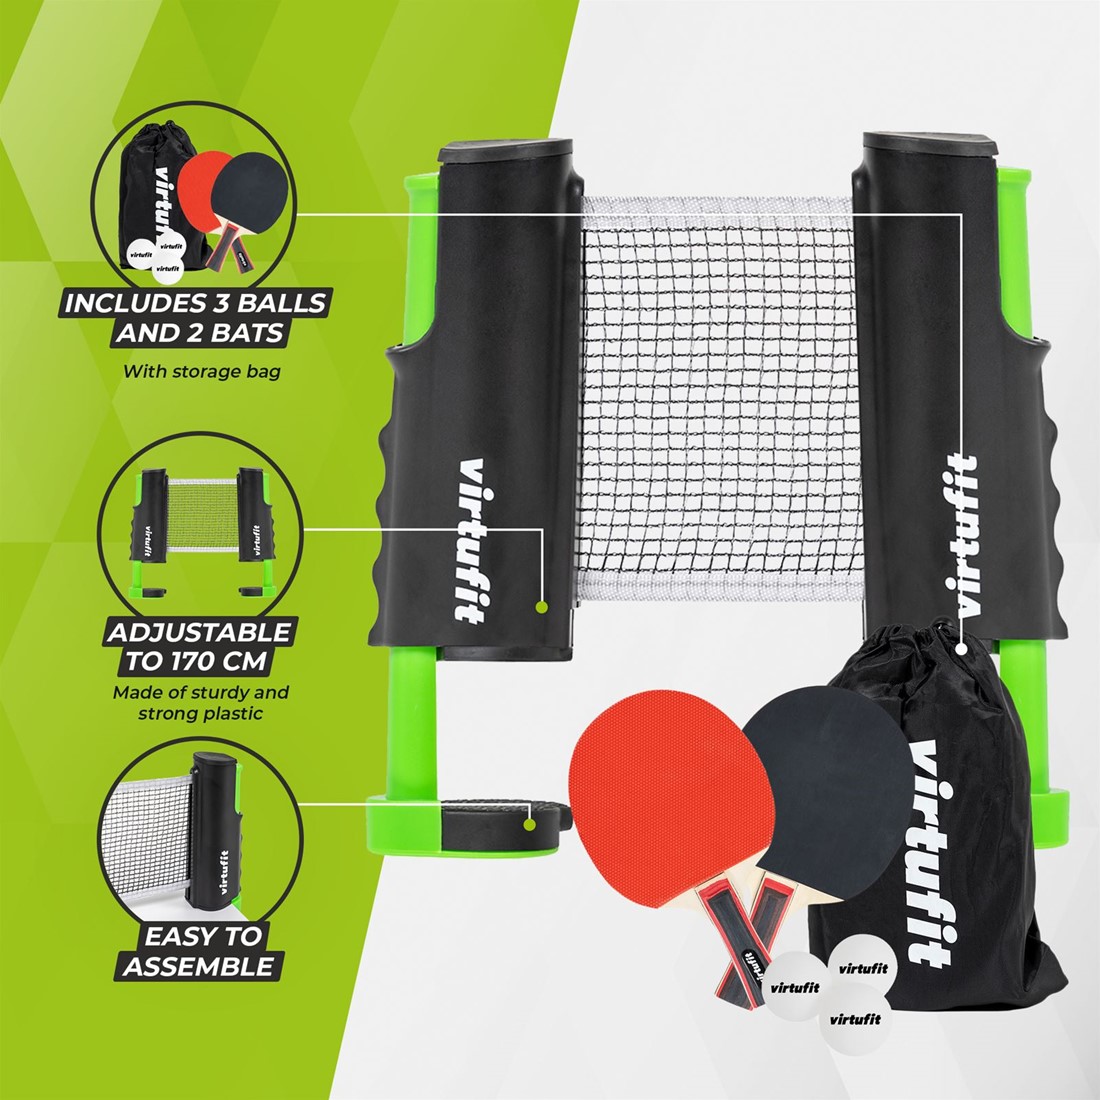 Ensemble de tennis de table ajustable VirtuFit - Avec battes et 3 balles